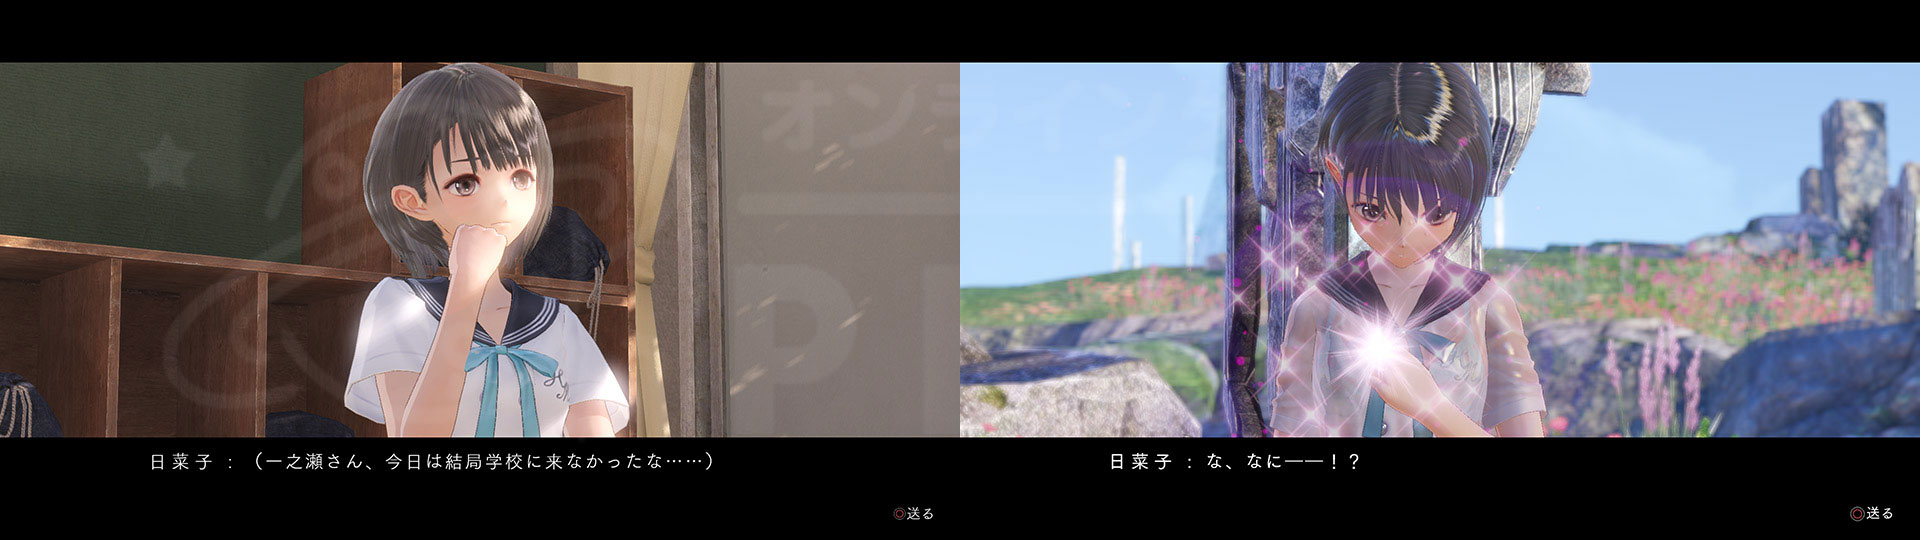 BLUE REFLECTION(ブルーリフレクション) 幻に舞う少女の剣 PC　『日菜子』が仲間に共感していくスクリーンショット